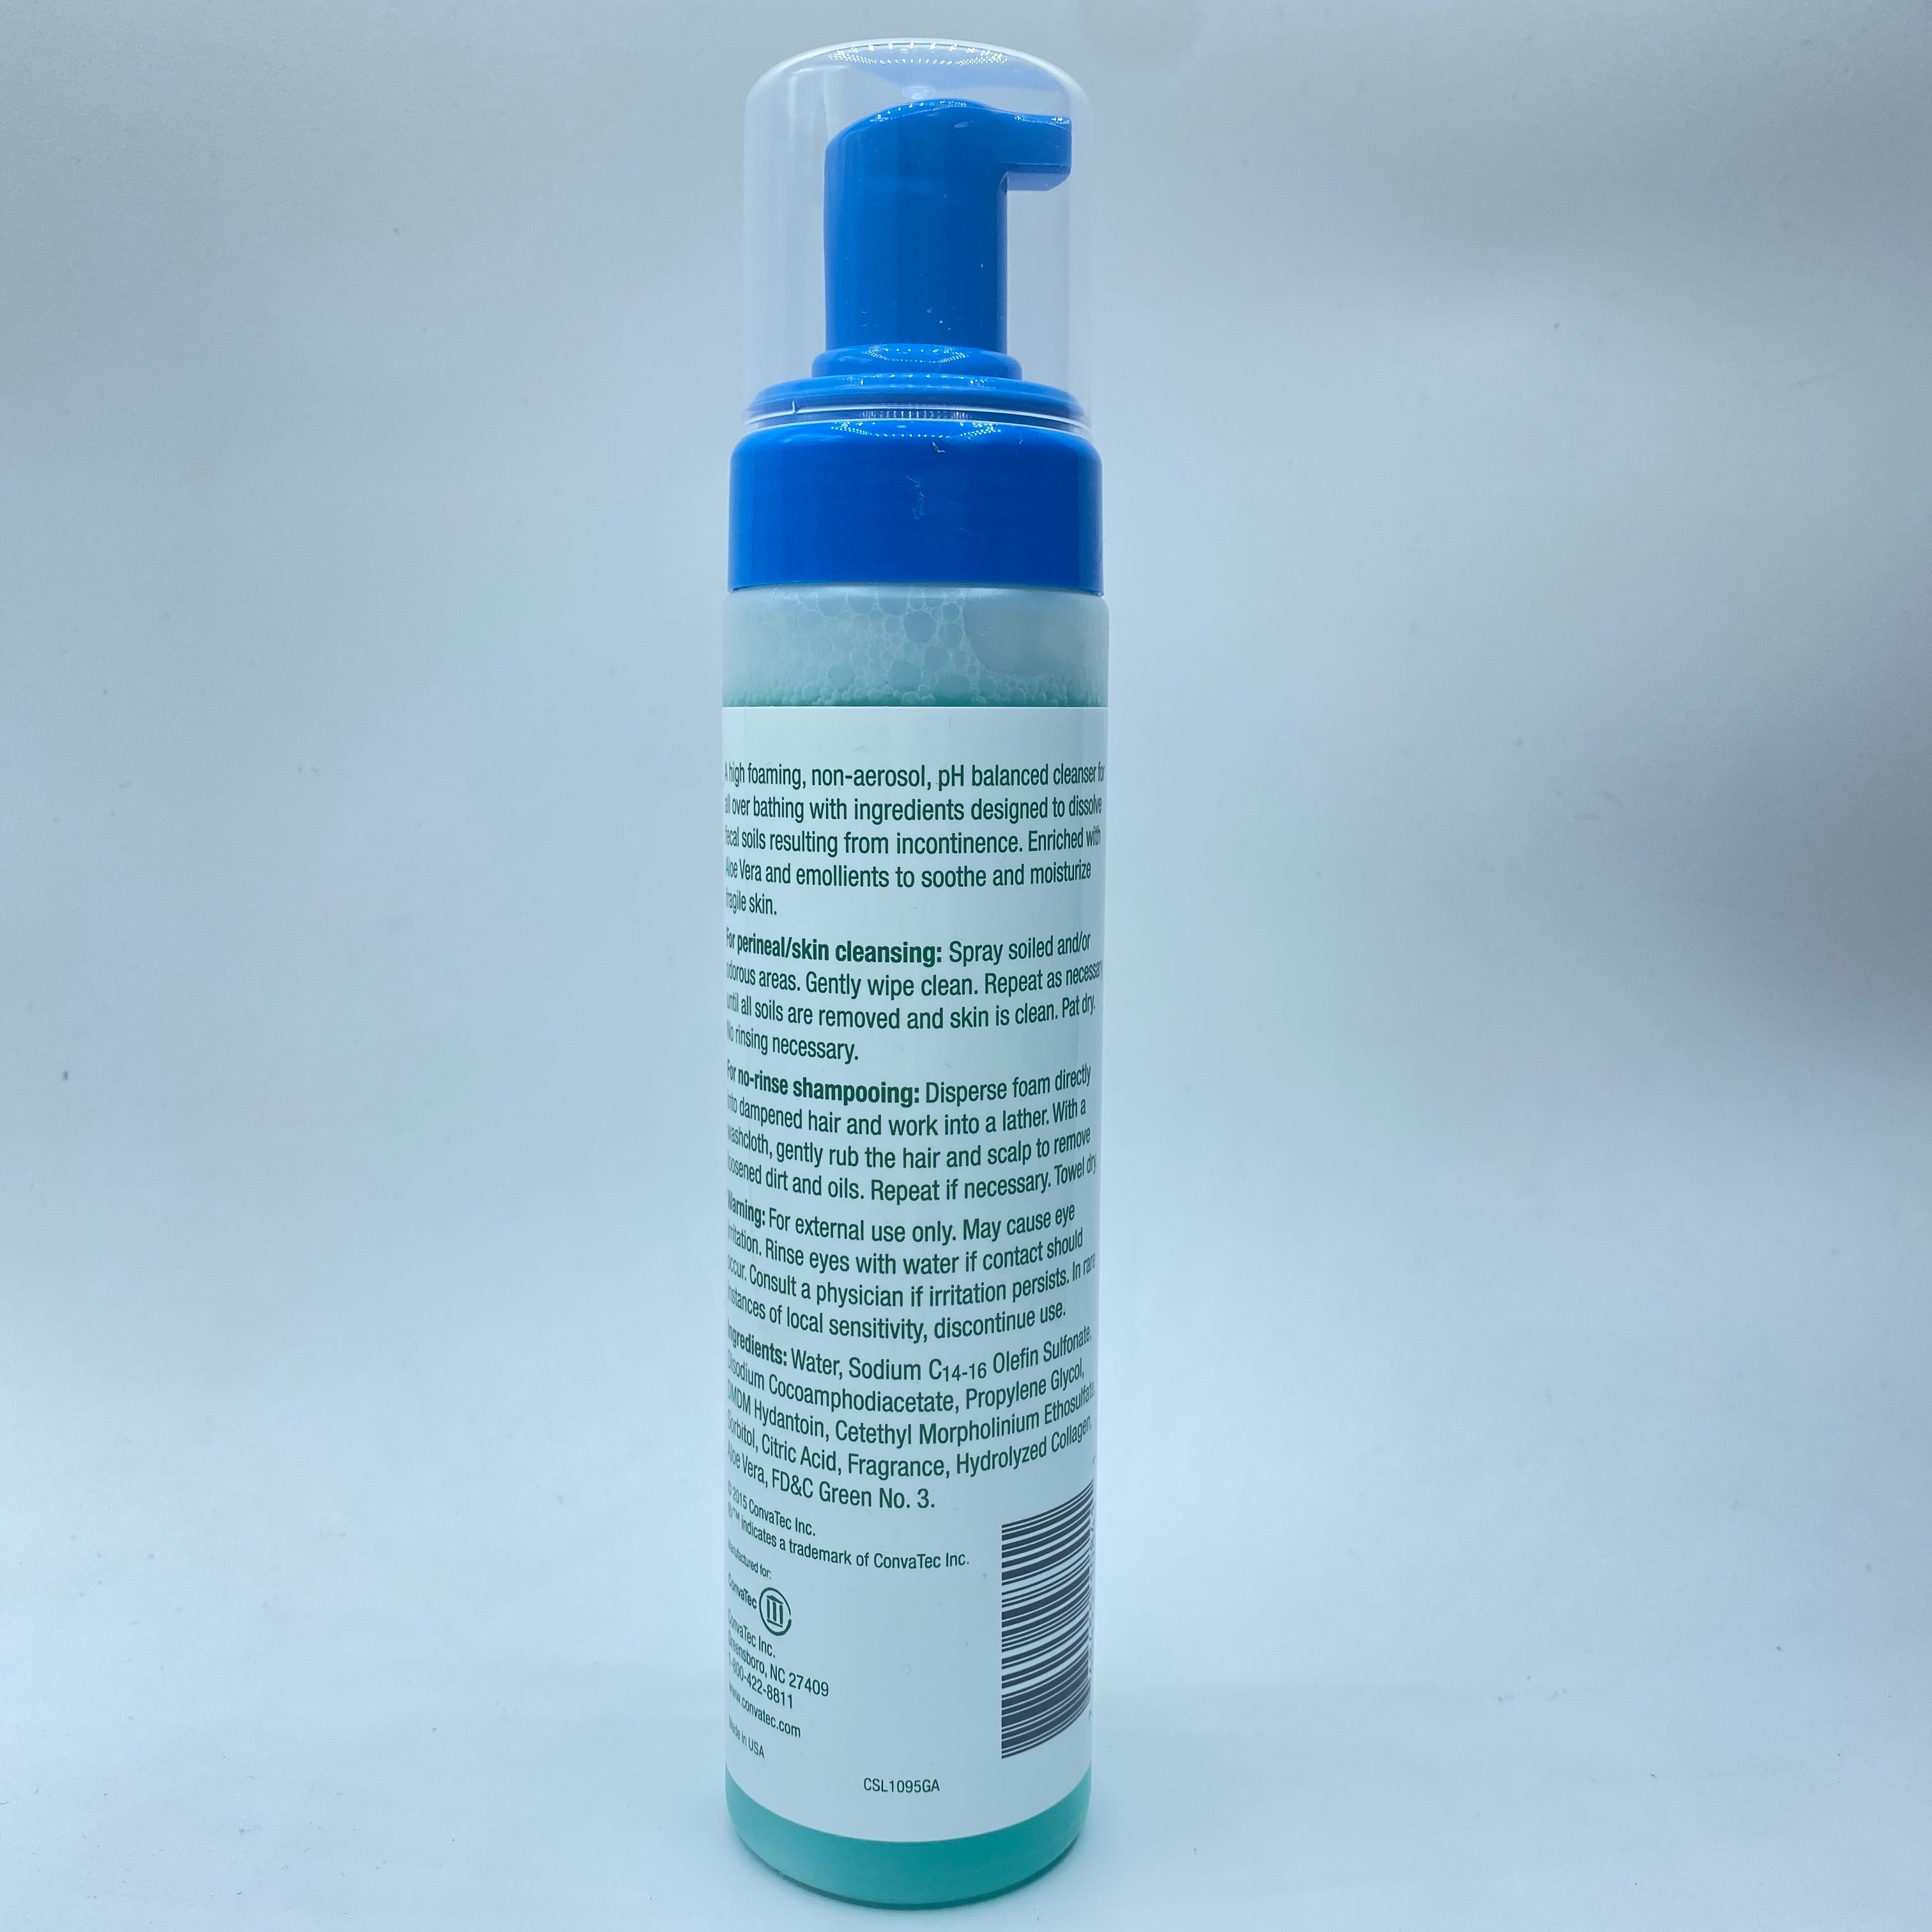 *Aloe Vesta 325208 Skin Cleansing Foam 8 oz Bottle